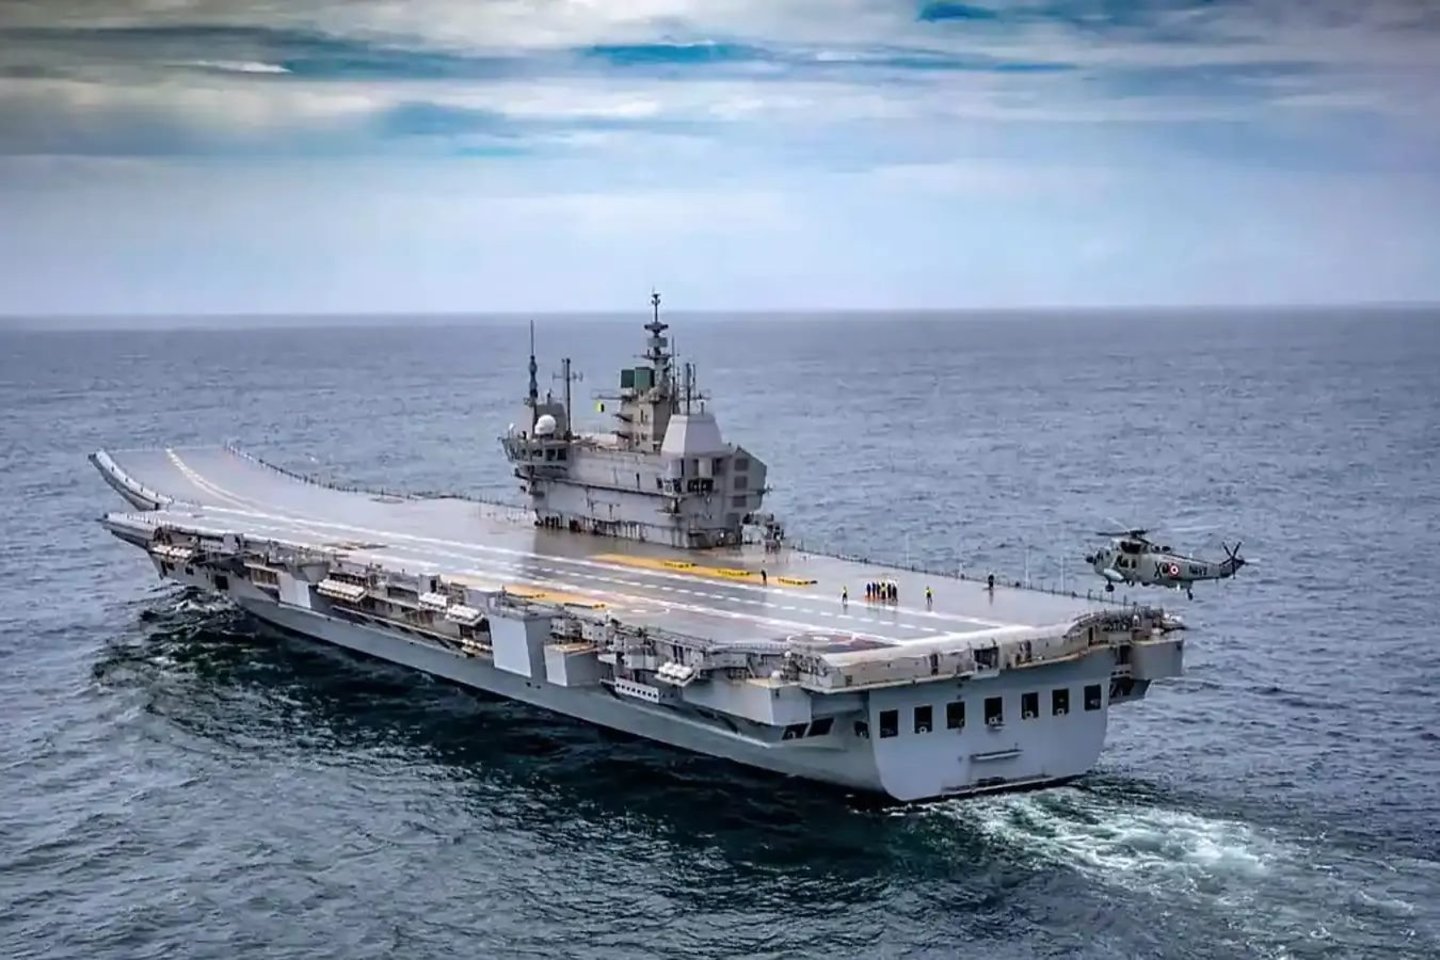  Po 17 metų trukusių statybų ir bandymų tarnybą oficialiai pradės „INS Vikrant“, vienas didžiausių pasaulyje – 262 metrų ilgio – karinis laivas.